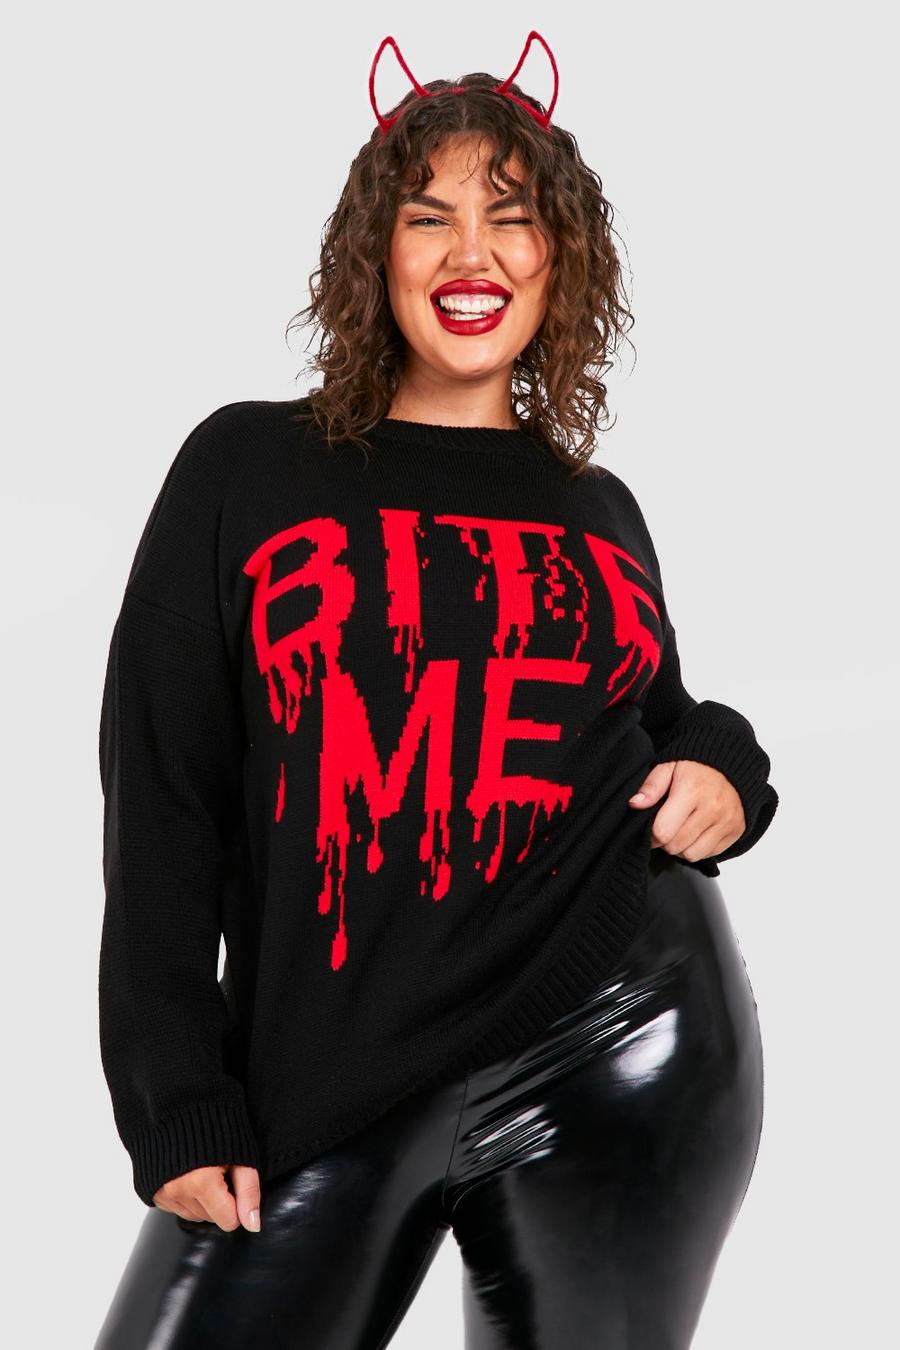 Maglione Plus Size di Halloween con scritta Bite Me, Black negro